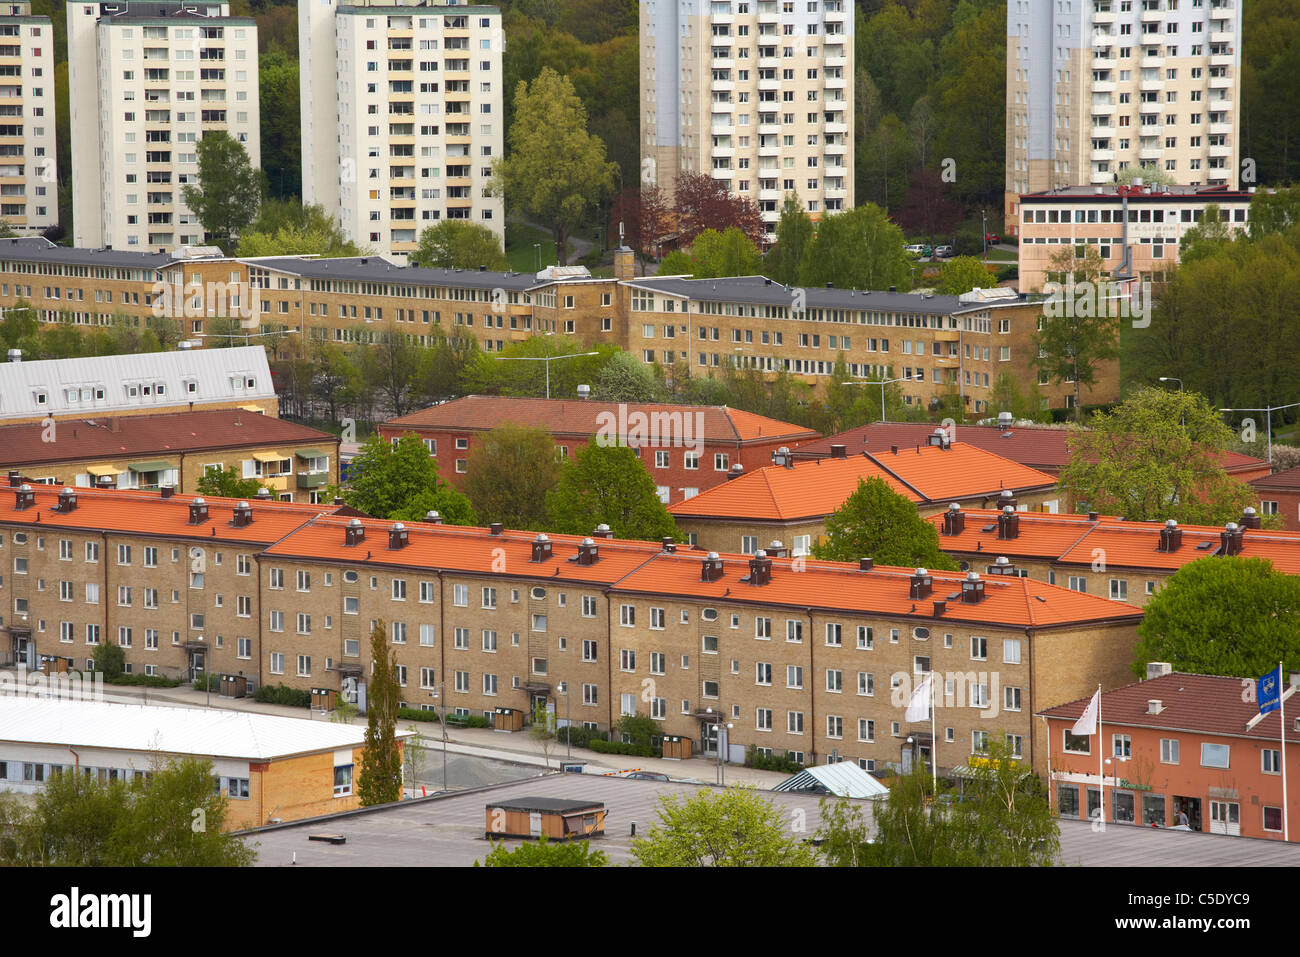 Las casas y edificios en Partille, Suecia Foto de stock